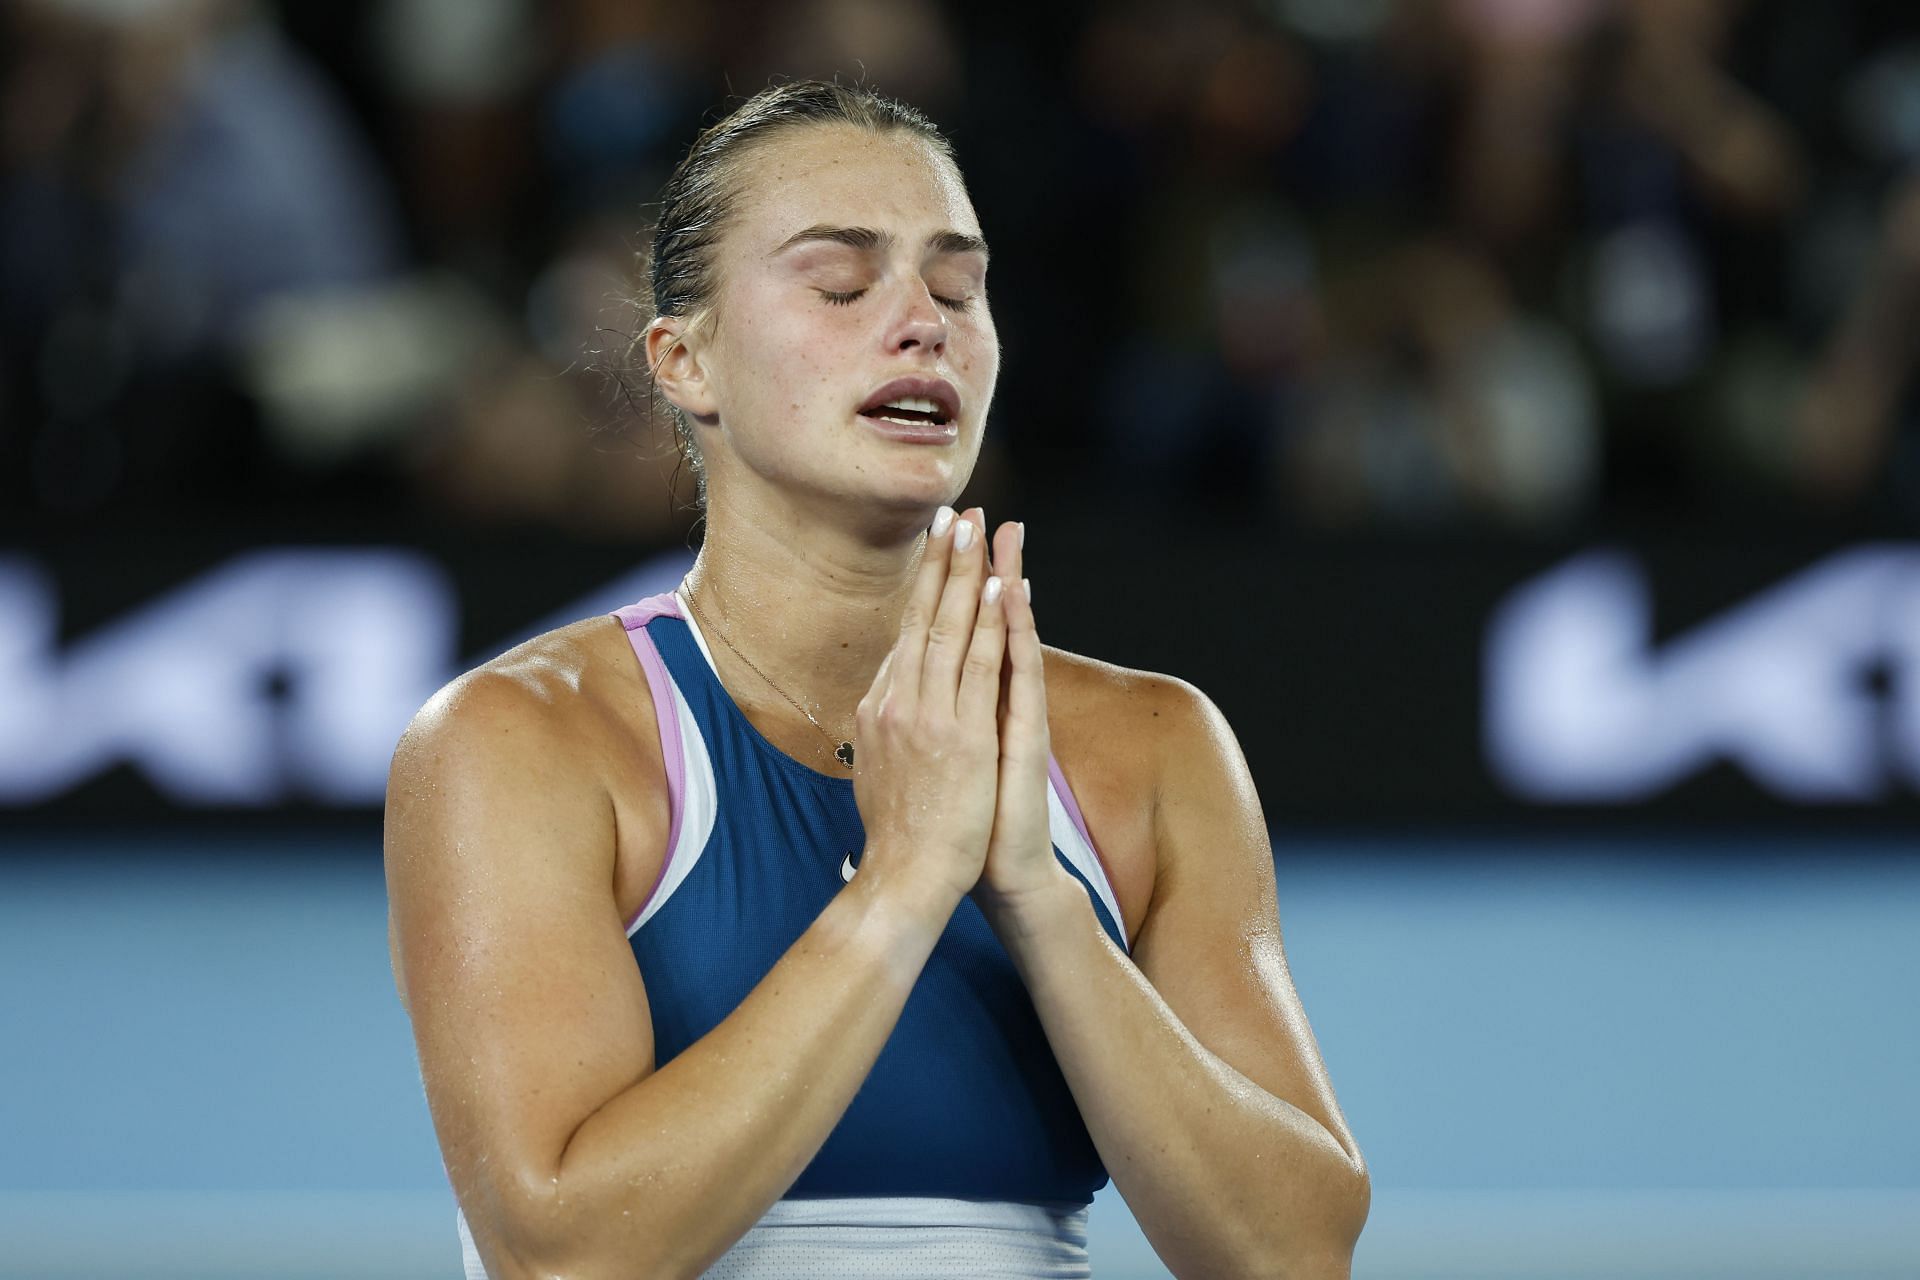 Aryna Sabalenka at the 2023 Australian Open